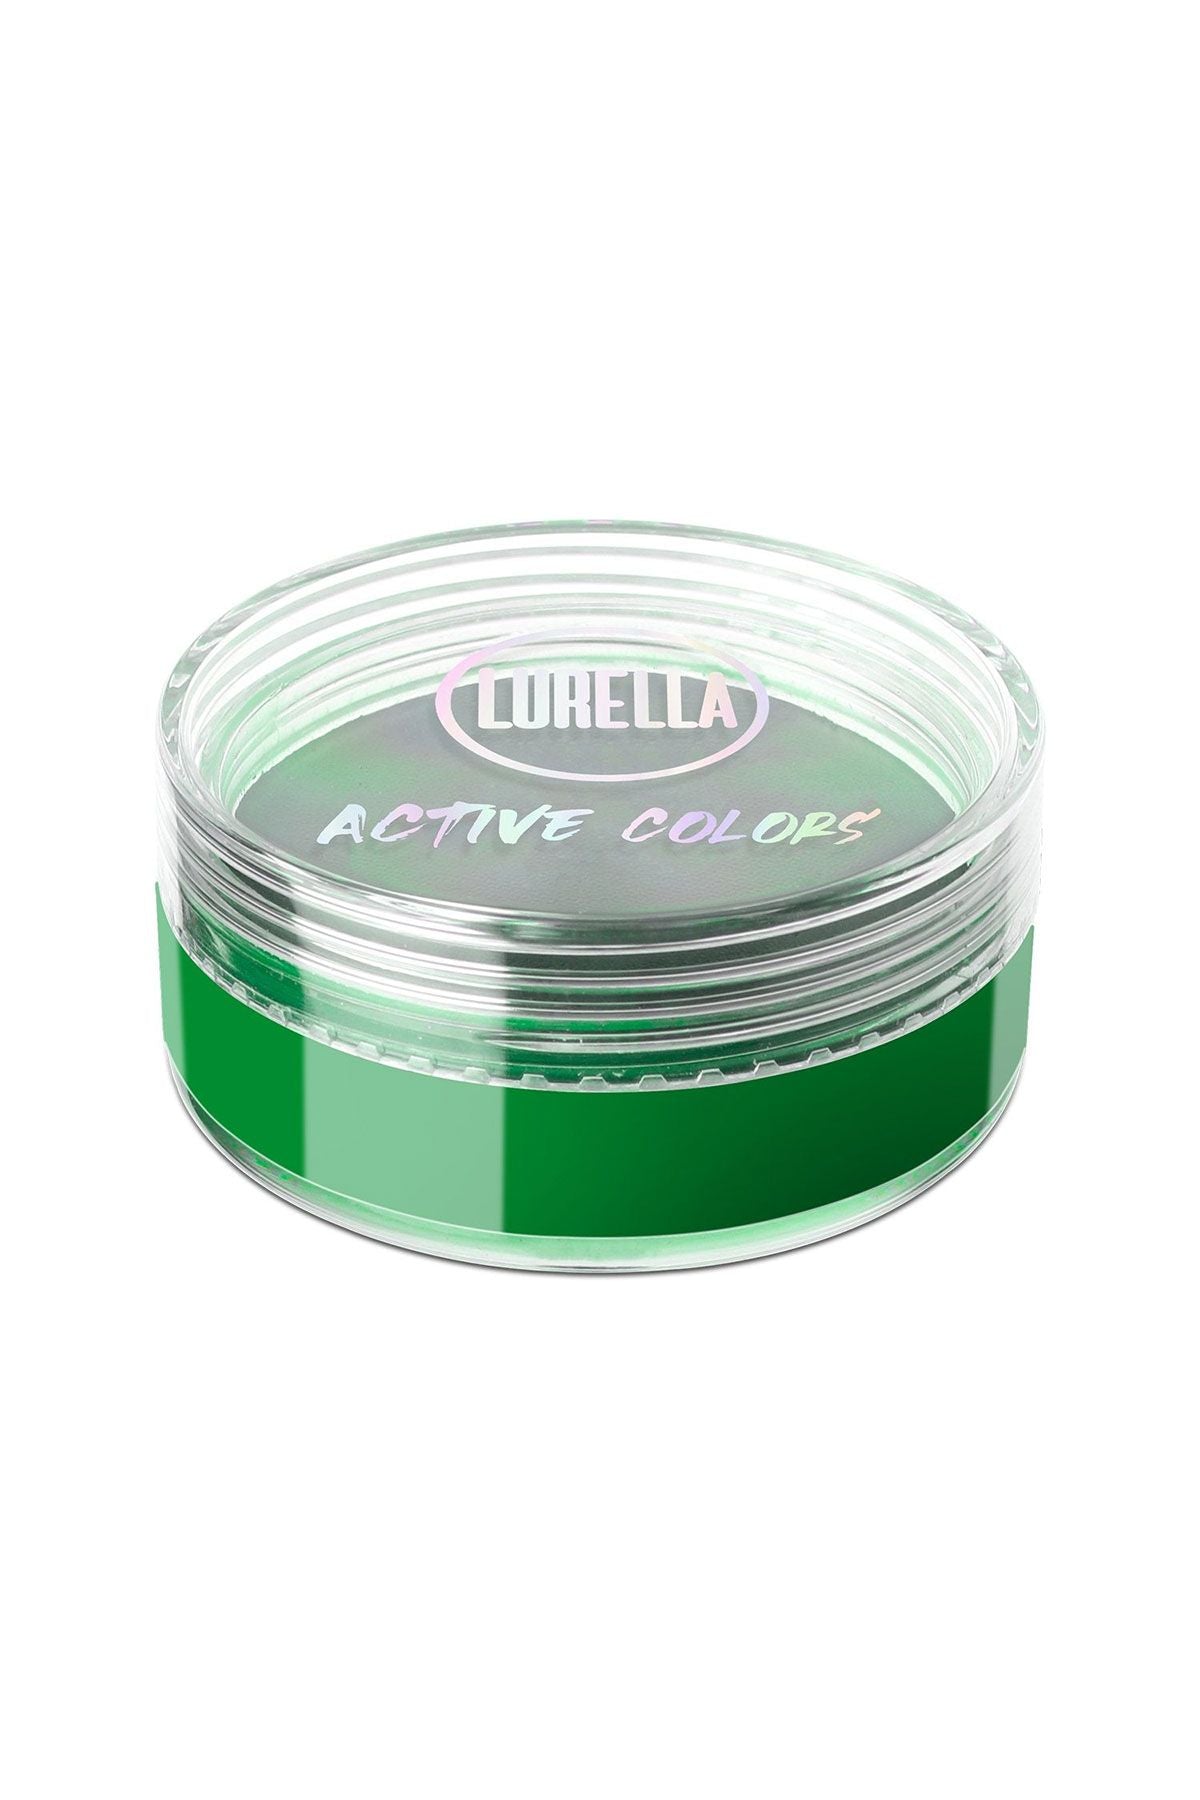 Lurella Active Colors Eyeshadow Slime - AllurebeautypkLurella Active Colors Eyeshadow Slime